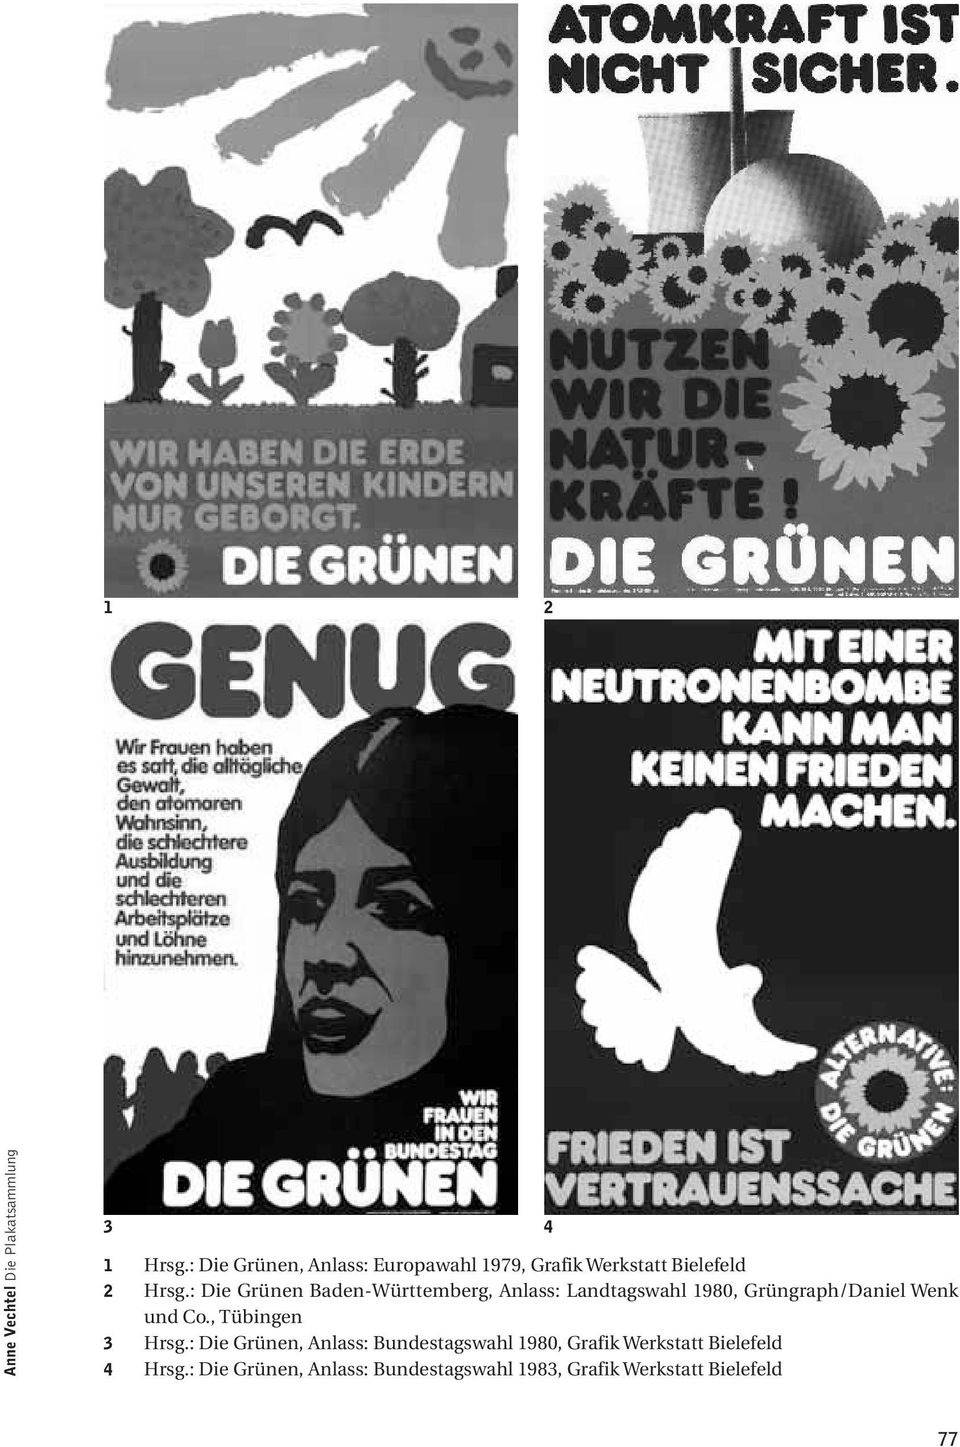 : Die Grünen Baden-Württemberg, Anlass: Landtagswahl 1980, Grüngraph/Daniel Wenk und Co.